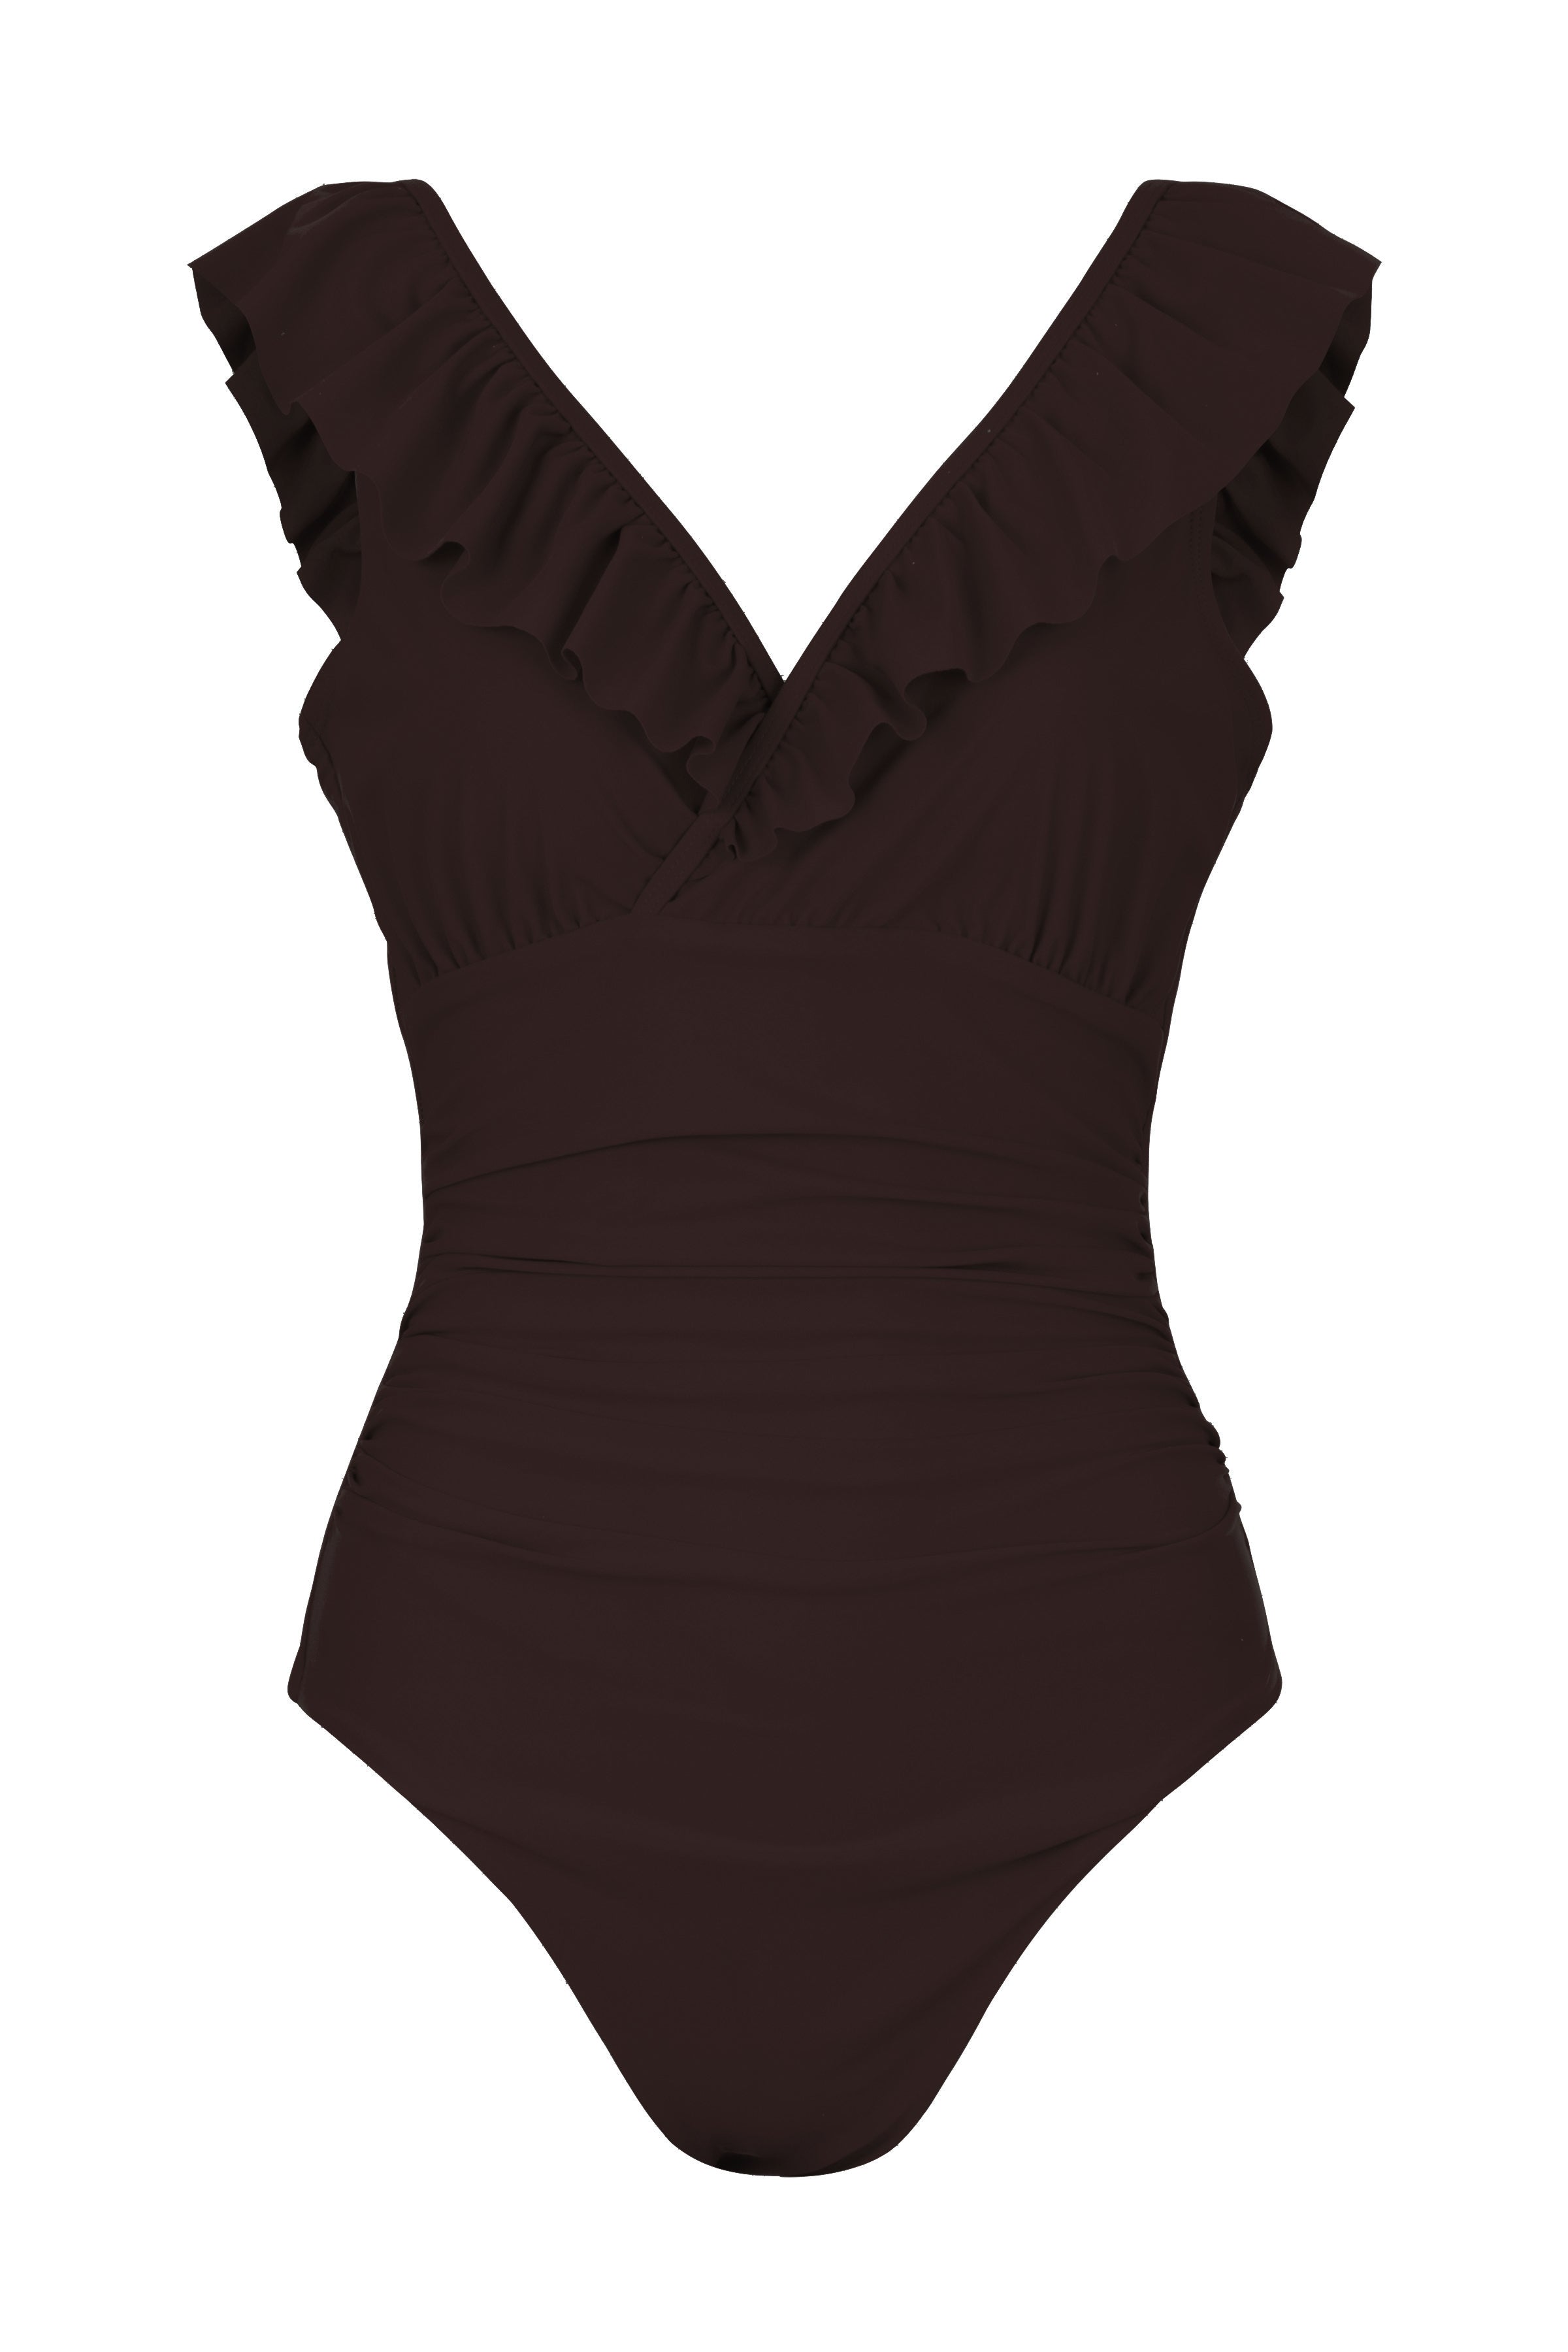 CRAS Agnes Swimsuit Swimwear 9999 Black